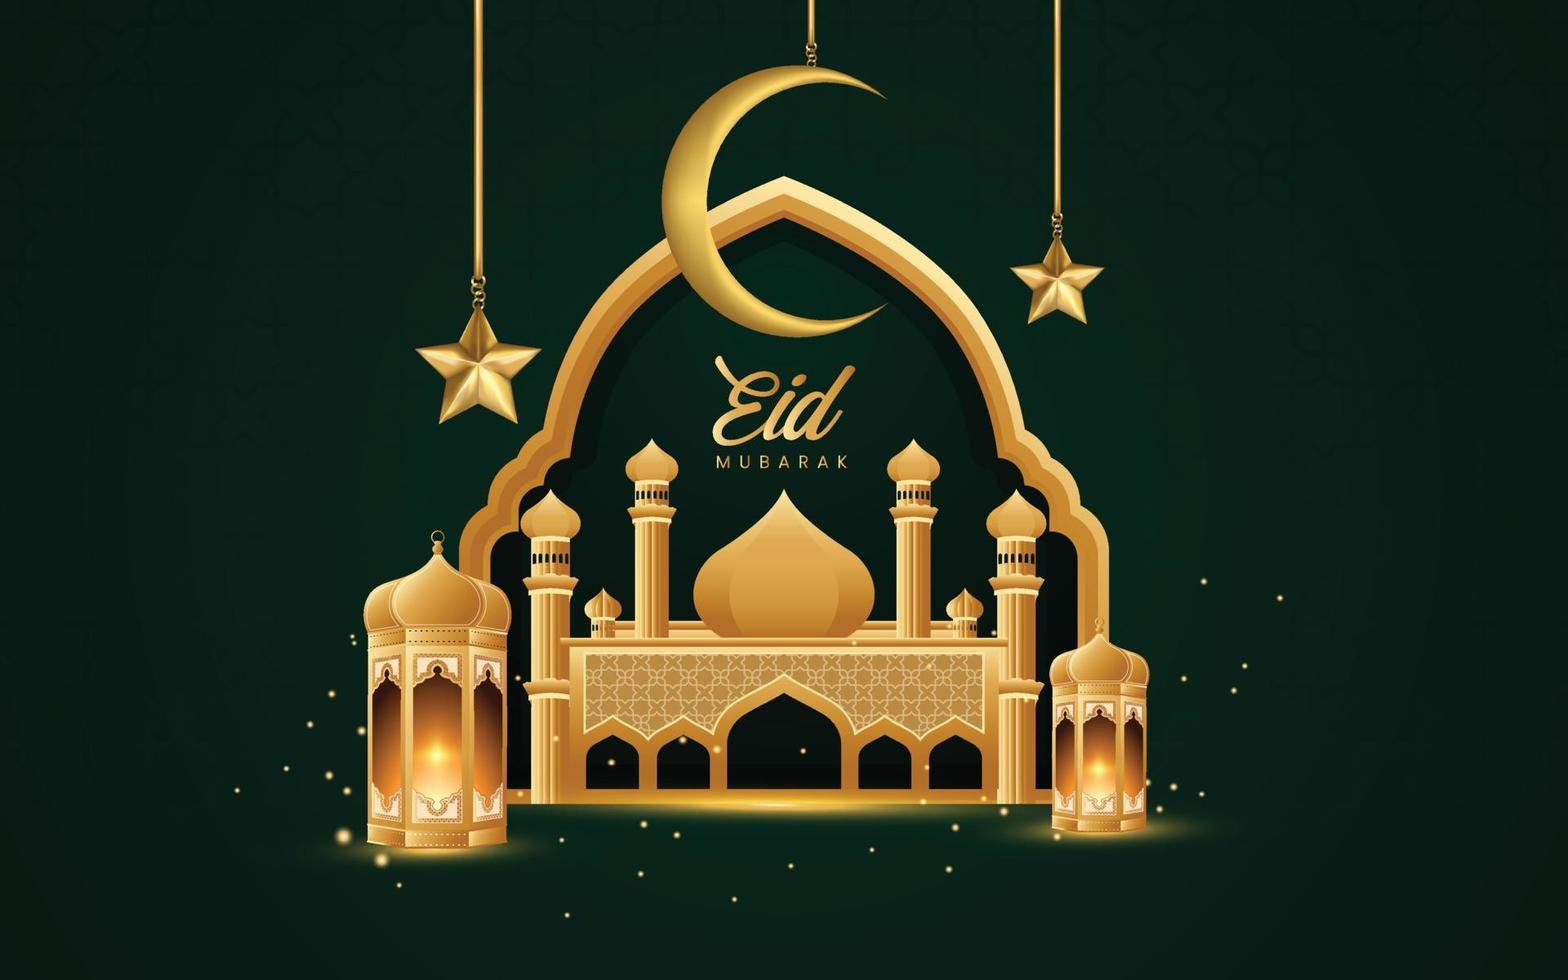 fond de ramadan de couleur verte, il existe des formes de mosquée, des motifs et des ornements d'étoiles et de lune qui conviennent aux bannières, aux modèles d'en-tête pour les sites Web et aux cartes de voeux. vecteur